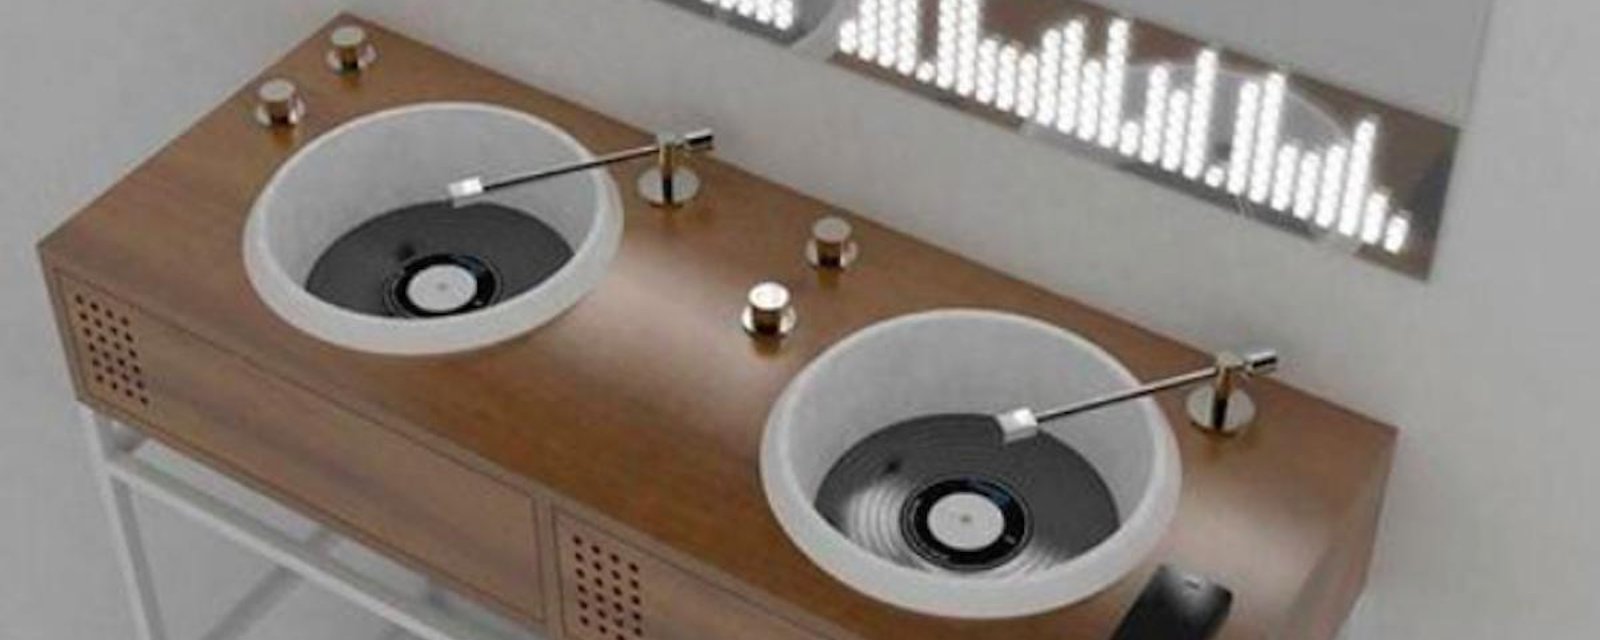 Des éviers de salle de bain pour les mordus de musique